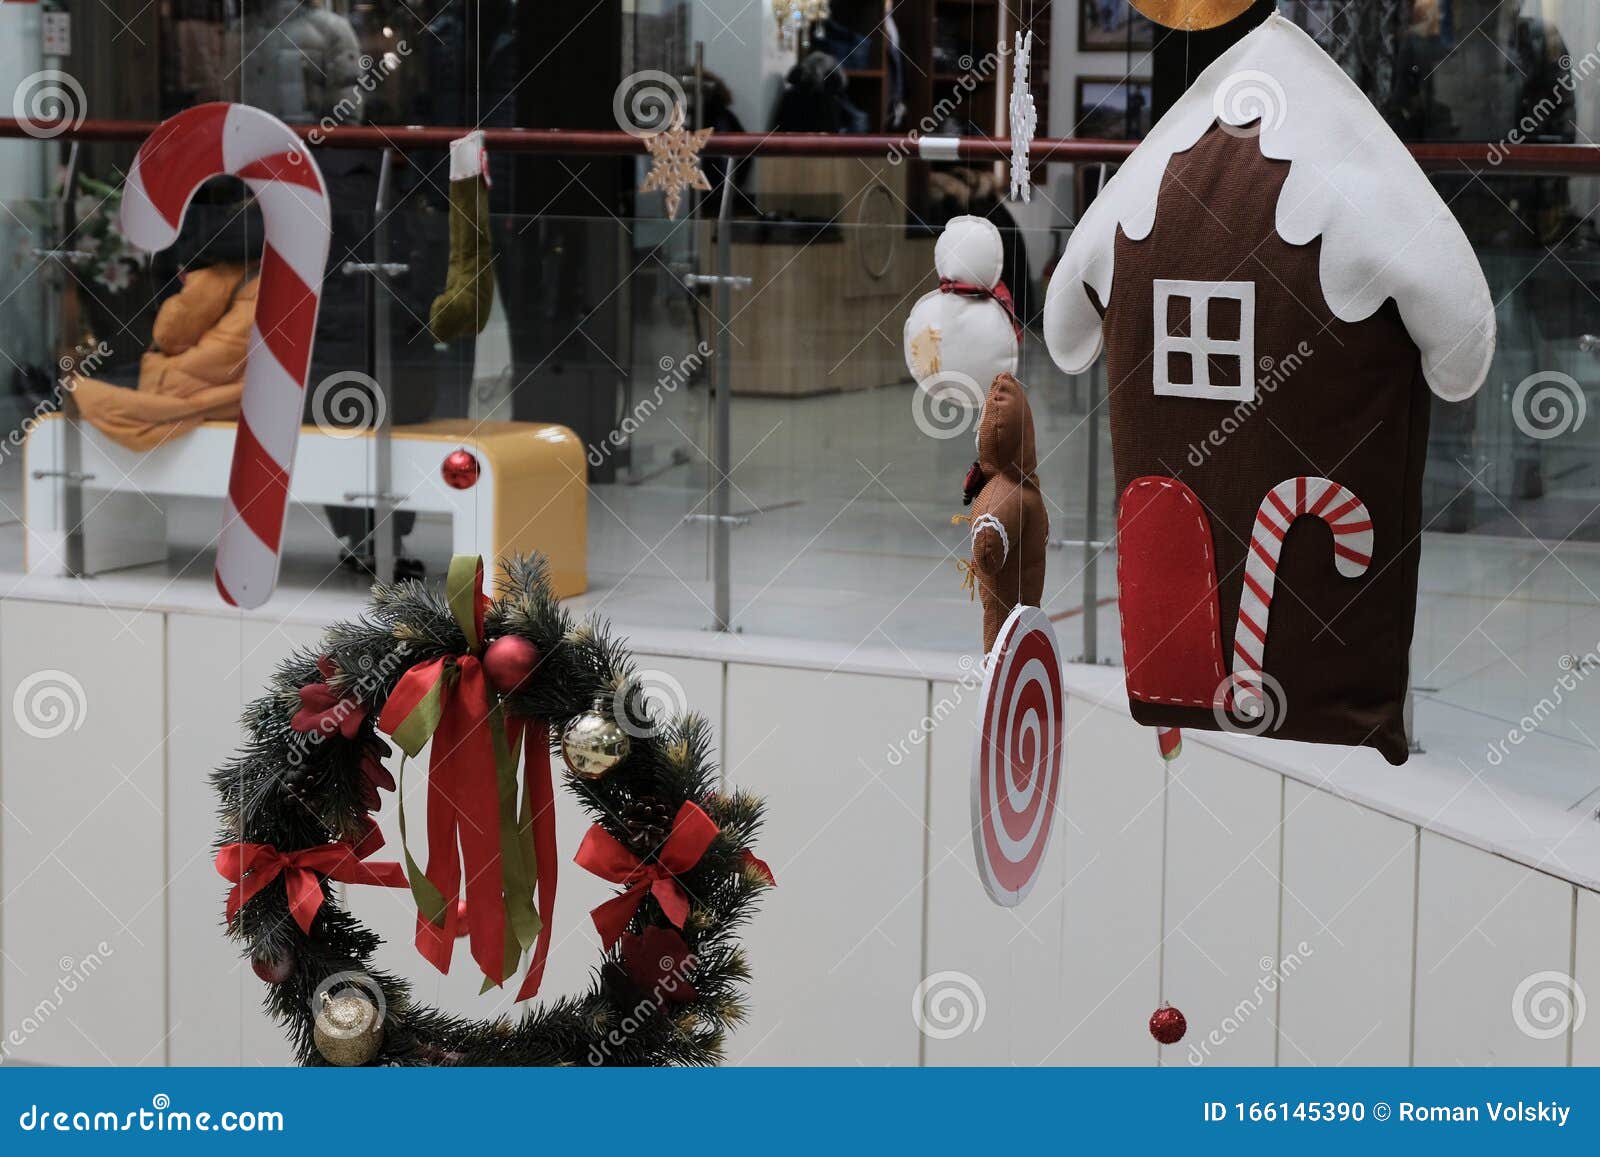 Decoración Navideña Abstracta En Un Supermercado, Tienda De Ropa, Centro Comercial Los Juguetes De Año Nuevo Techo Foto de archivo - Imagen de navidad, festivo: 166145390